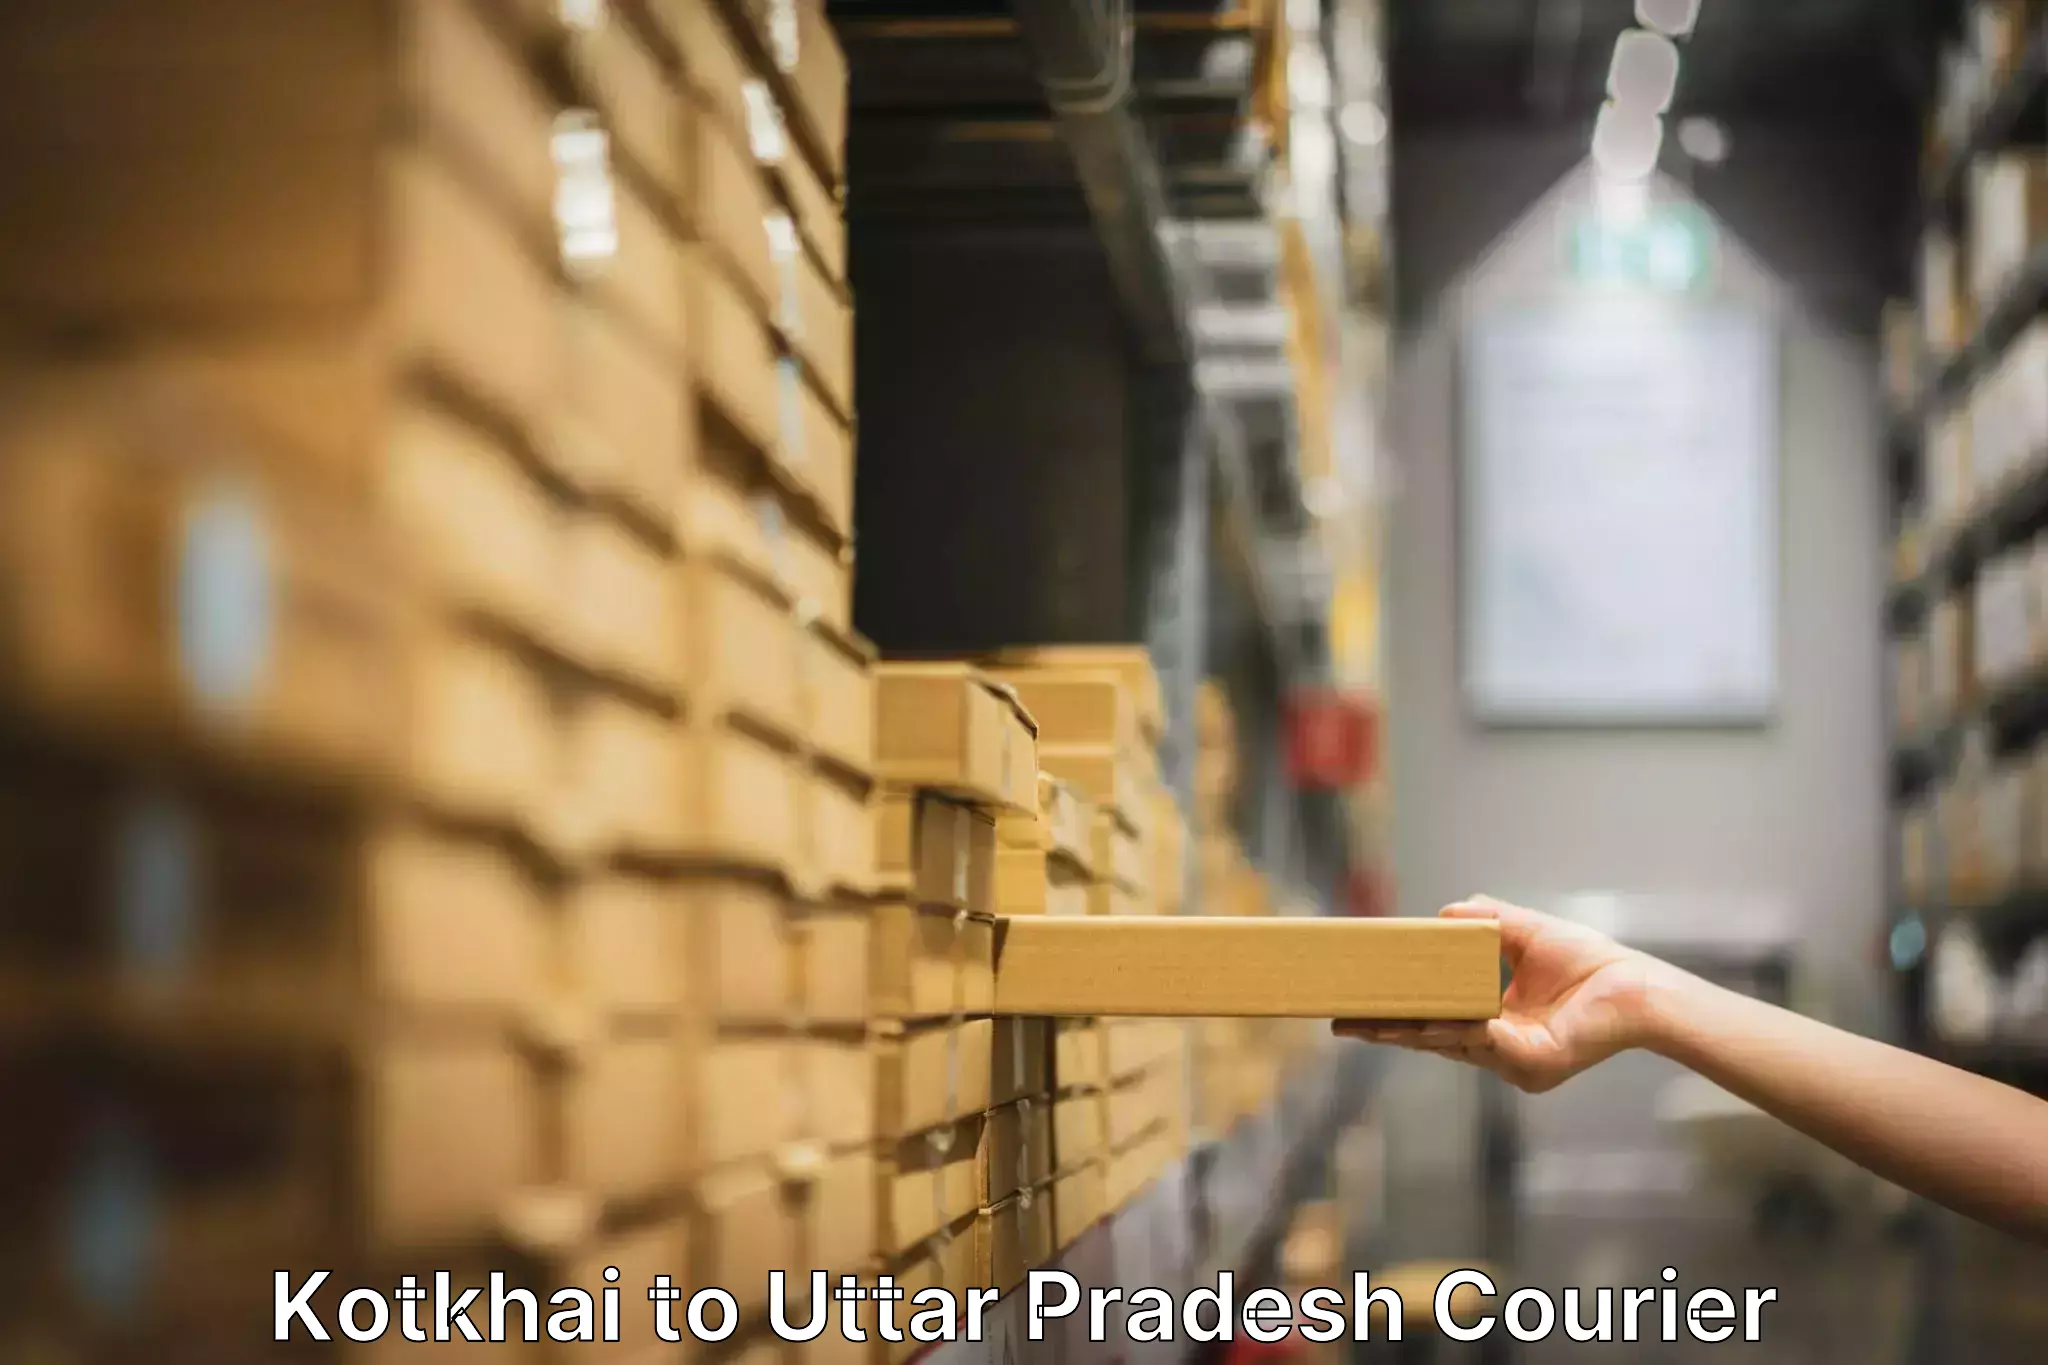 Moving and storage services Kotkhai to Uttar Pradesh